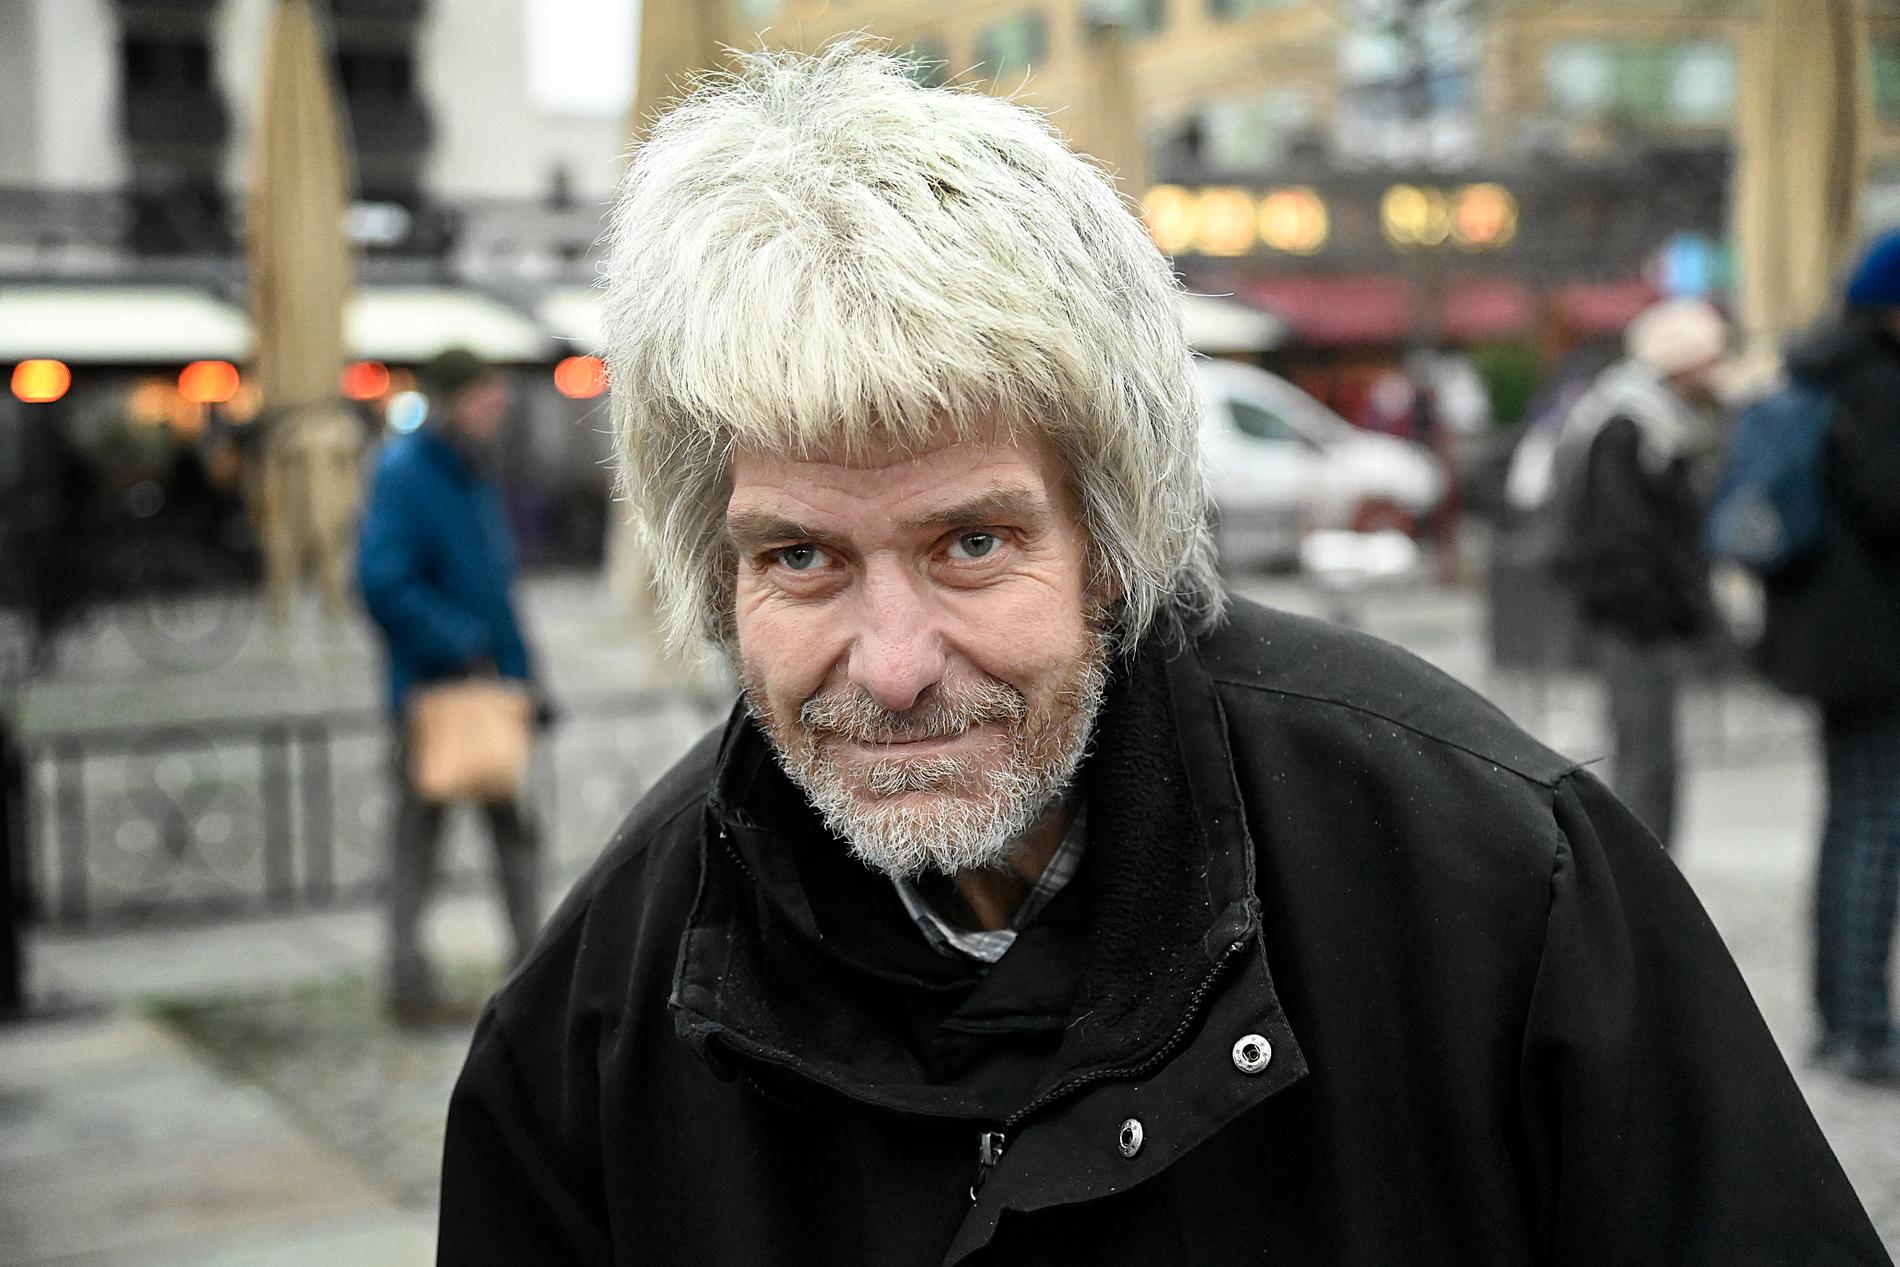 ”Jag är i alla fall inte flintskallig”, konstaterar Greger när Aftonbladets fotograf tar en bild.